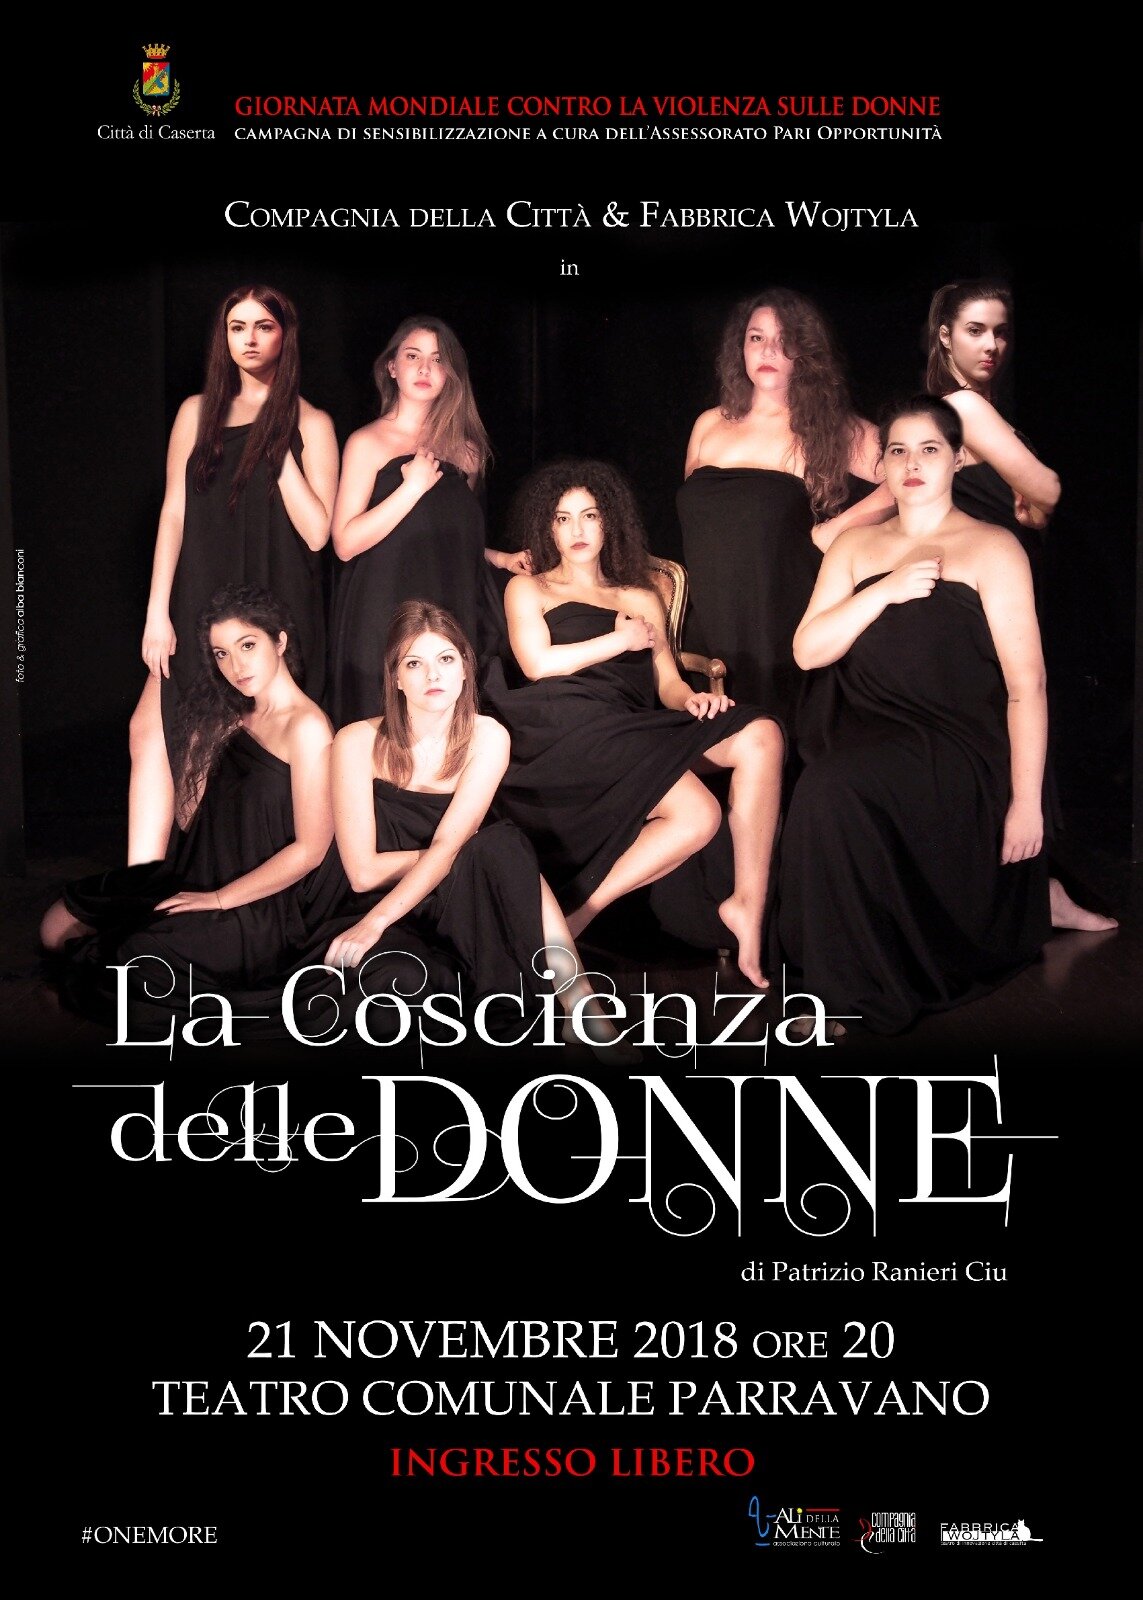 “La Coscienza delle Donne” e l’hashtag #onemore, mercoledì 21 novembre, ore 20, Teatro Comunale C. Parravano